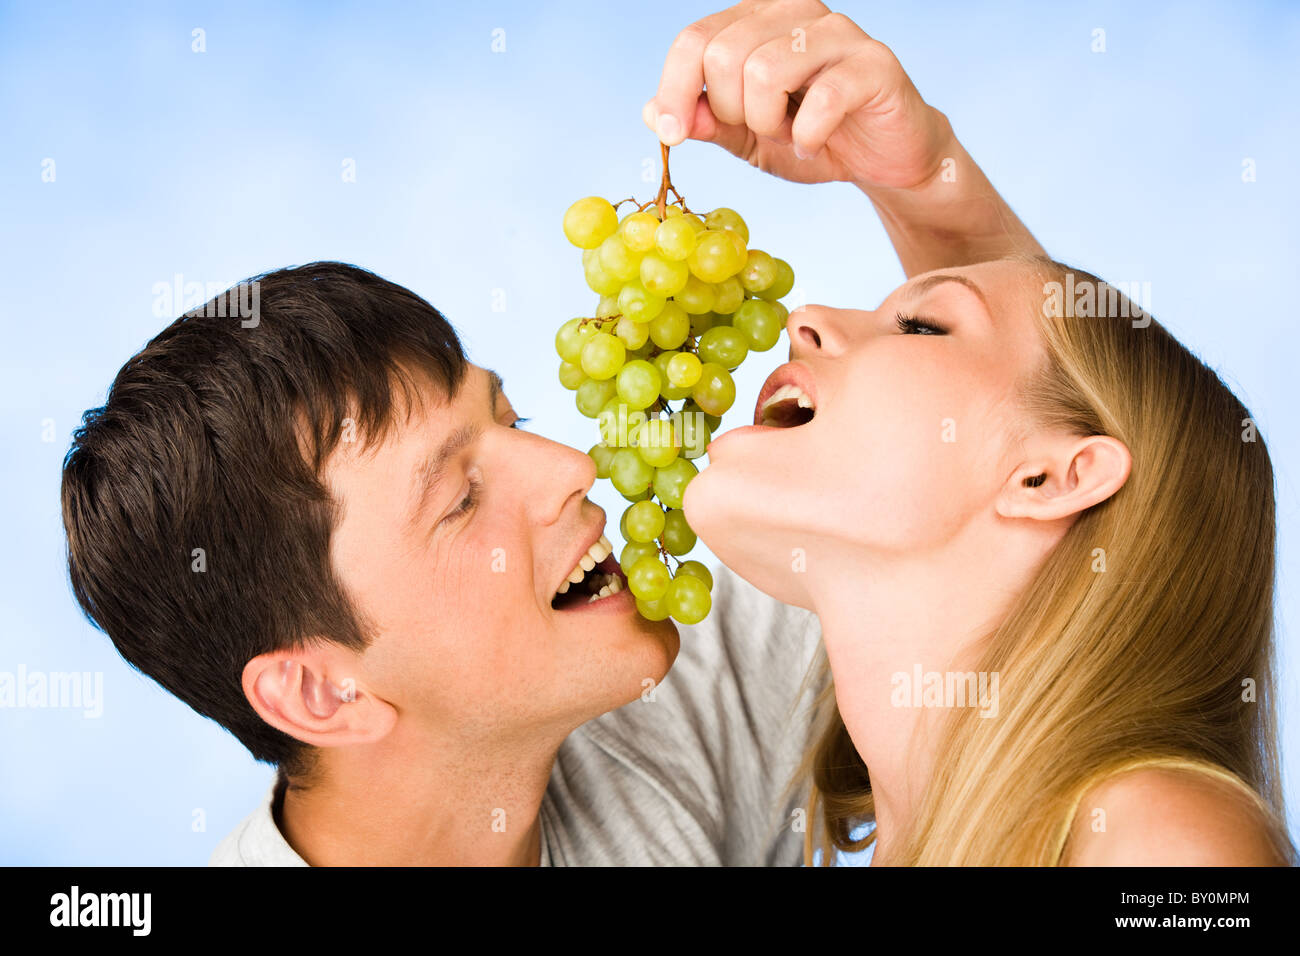 Девушка есть виноград. Человек виноград. Человек ест виноград. Парень с виноградом. Фотосессия мужчин с виноградом.